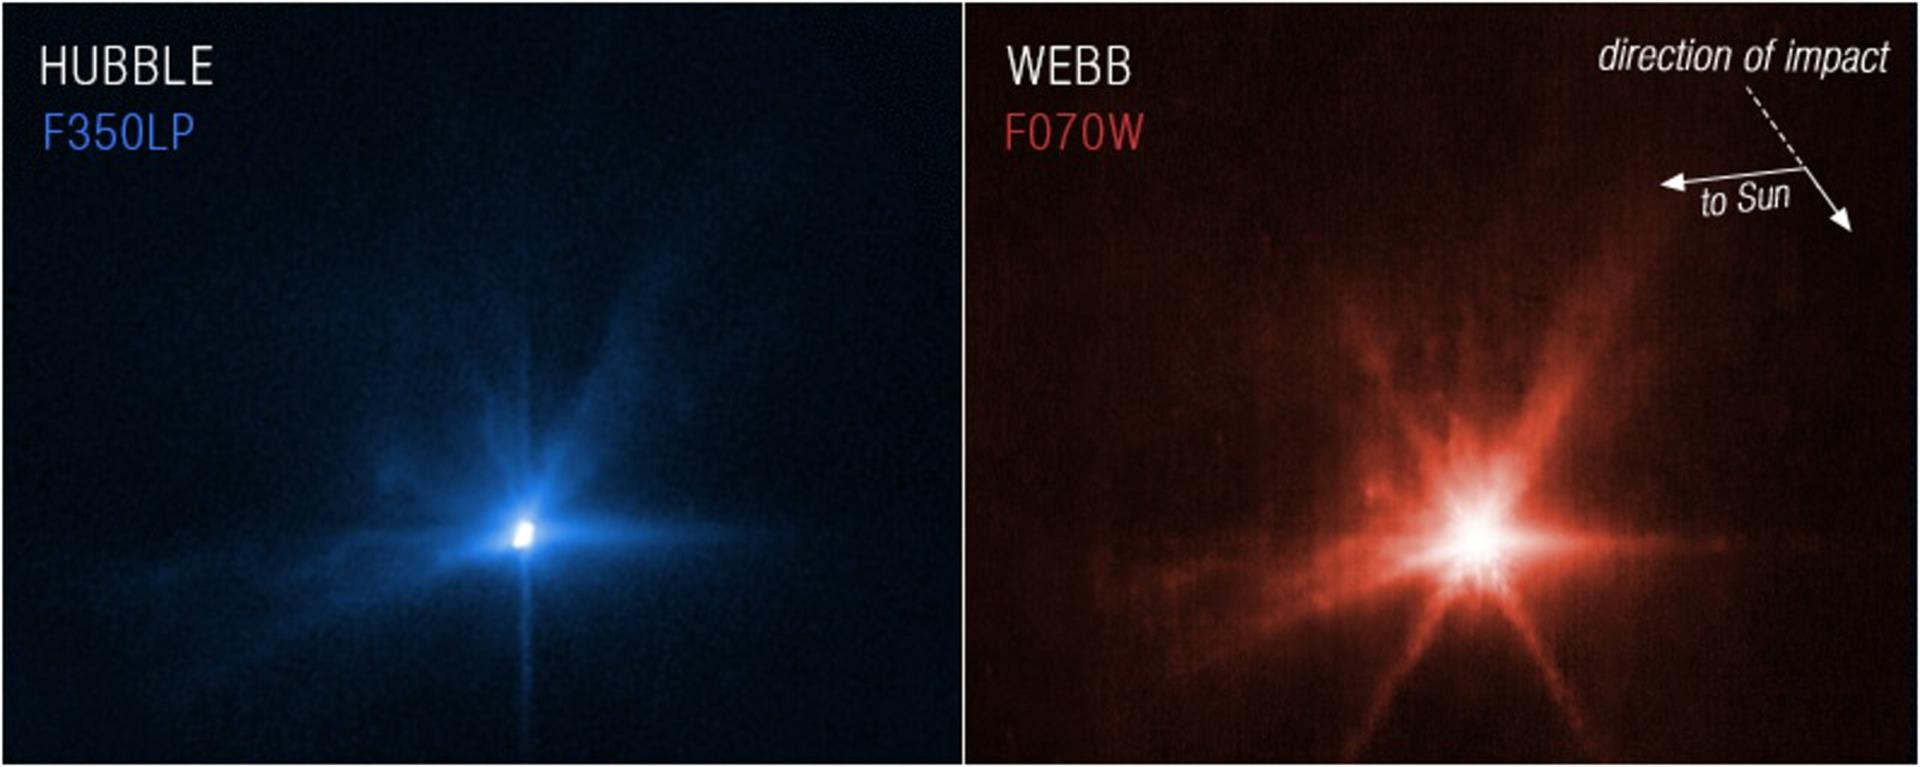 El impacto de Dart contra el asteroide desde los ojos del Hubble y el Webb